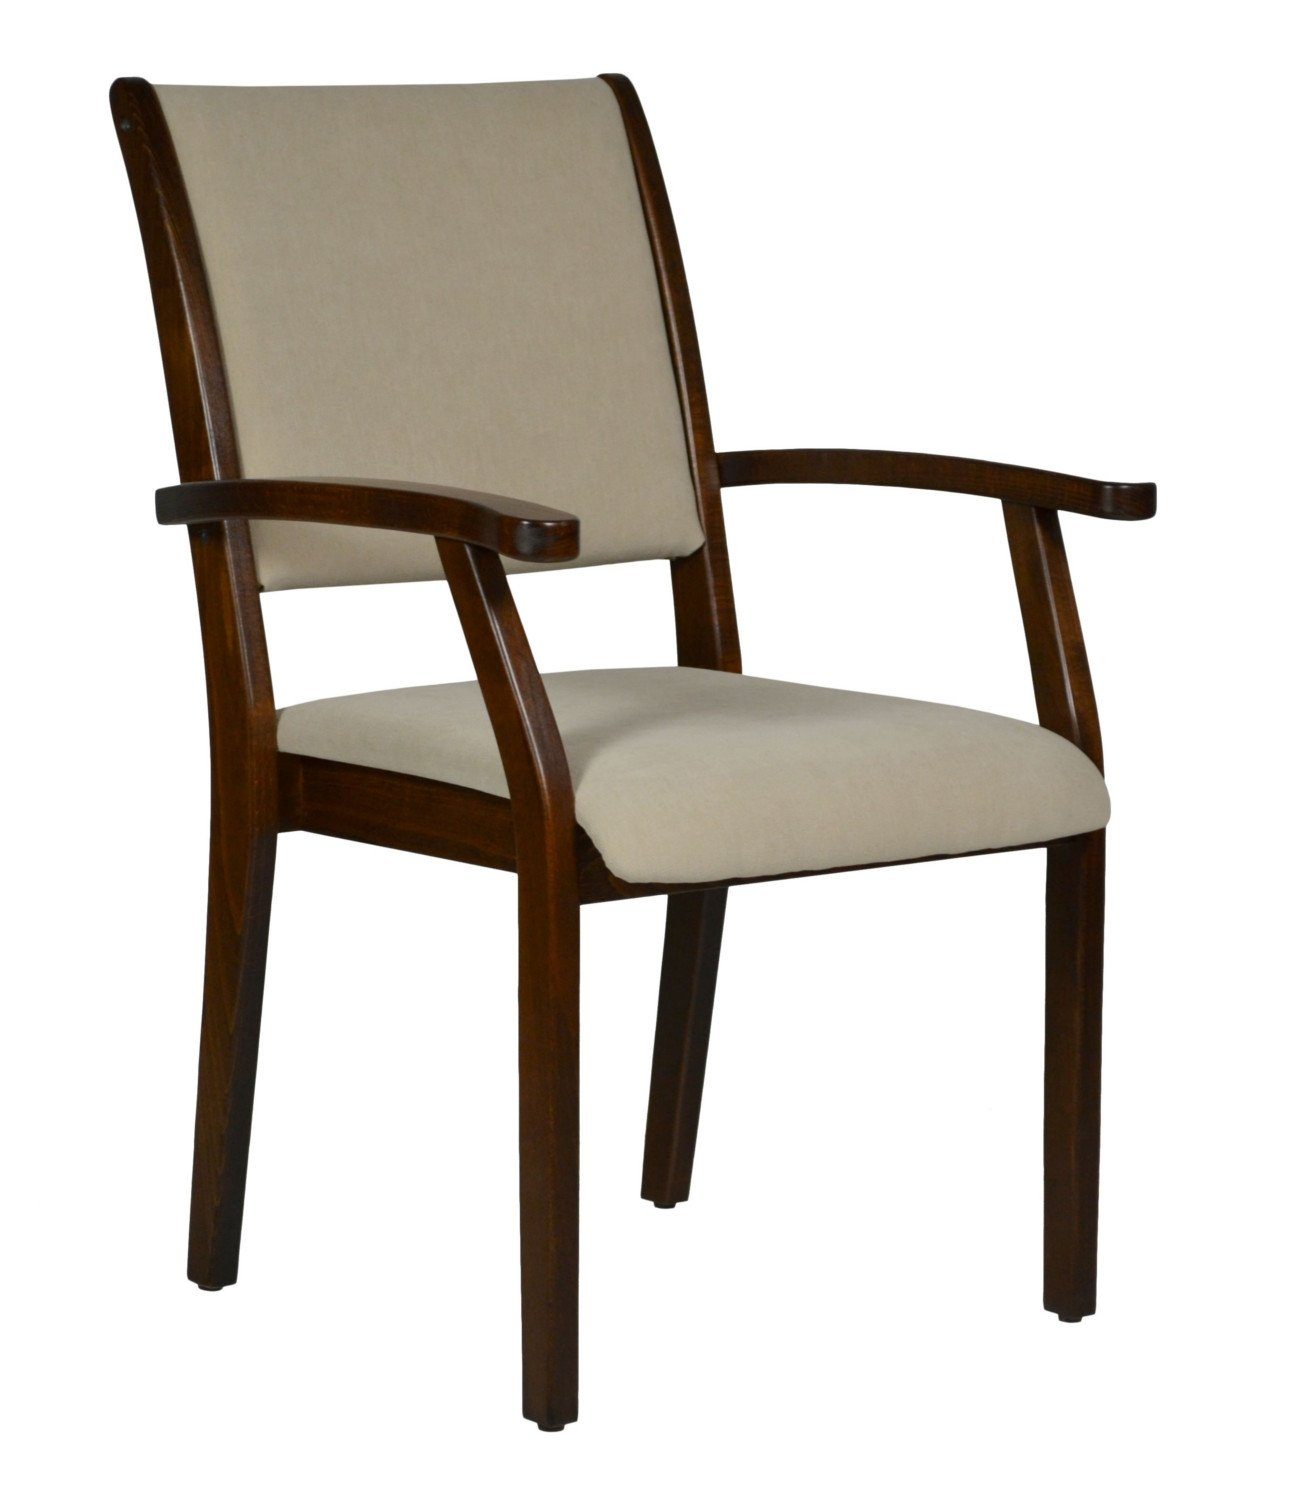 Sitzhöhen Pflegestuhl Verschiedene standfest, Kerry - wählbar, Sand DB14 Seniorenstuhl (Einzel), Bezüge Microfaser wählbar verschieden Sitzhöhe Stuhl Devita stapelbar, versch.